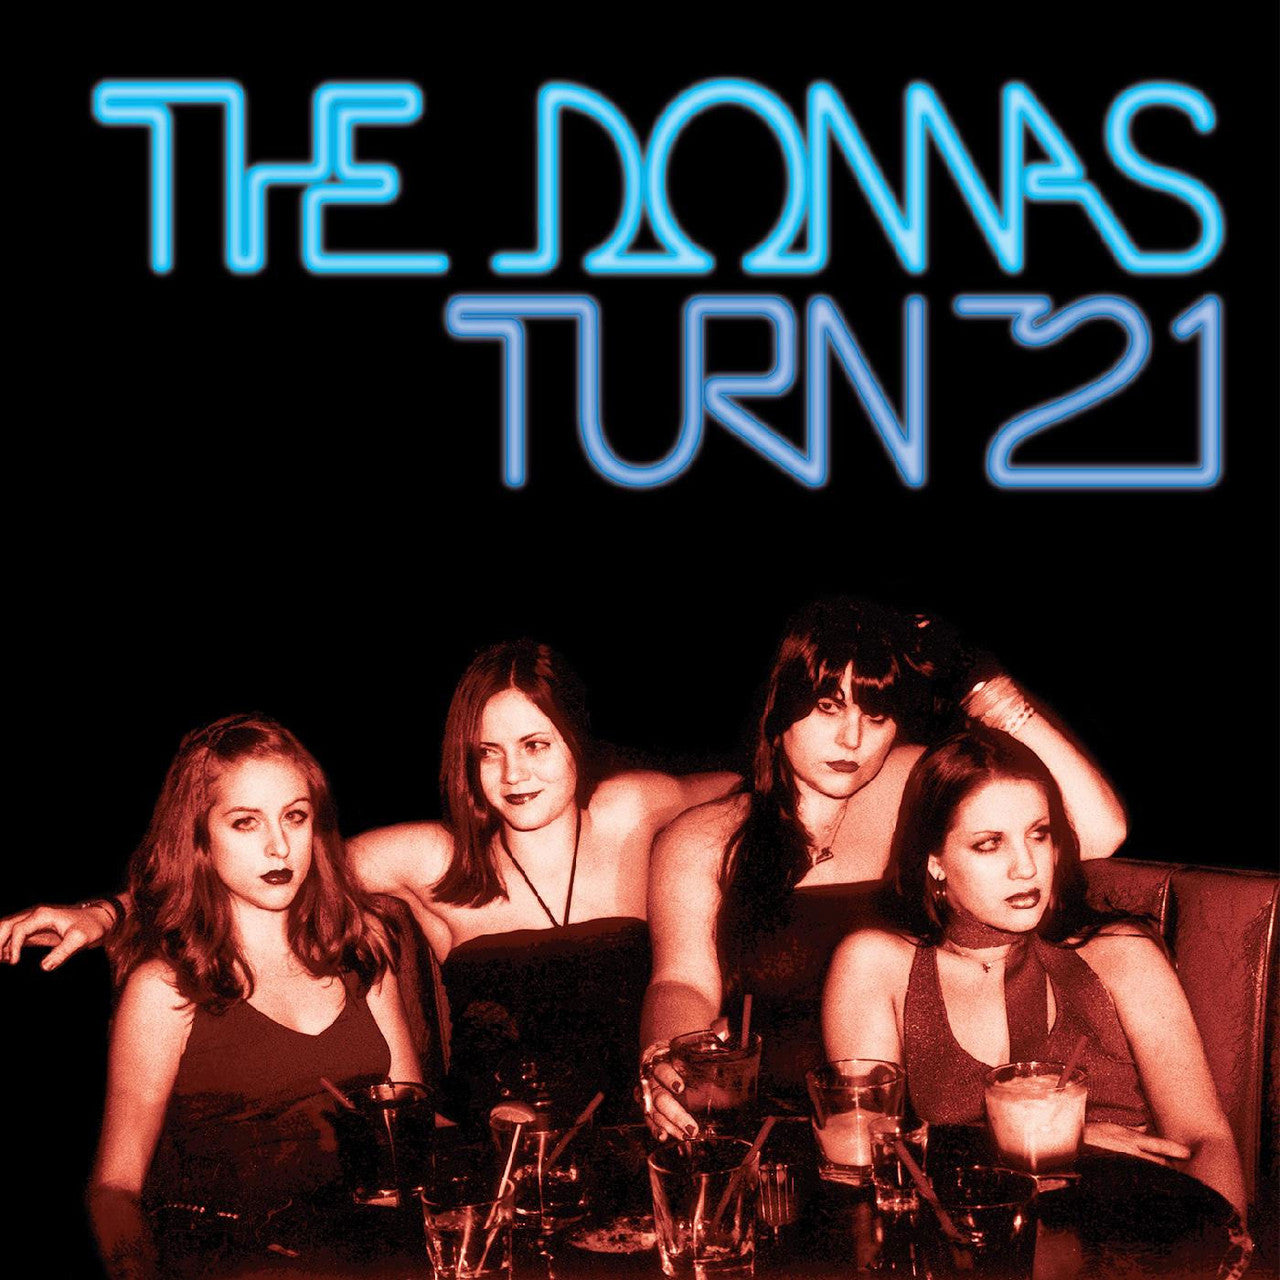 The Donnas - Turn 21: Remastered 'Blue Ice Queen' Vinyl LP